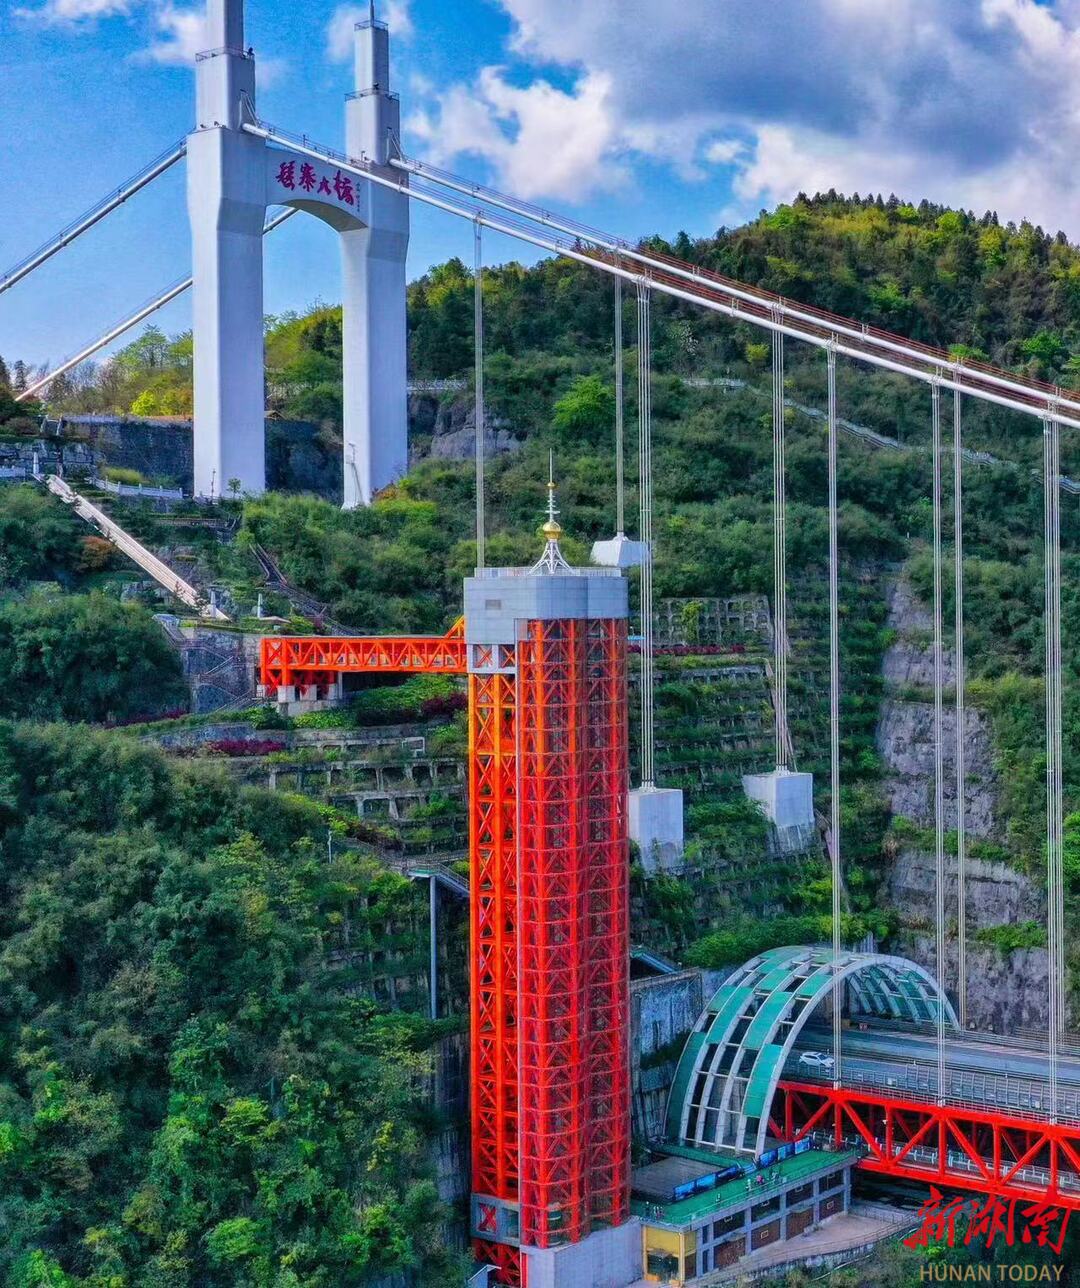 矮寨大桥垂直旅游观光电梯2016年国庆节,矮寨大桥旅游观光通道正式